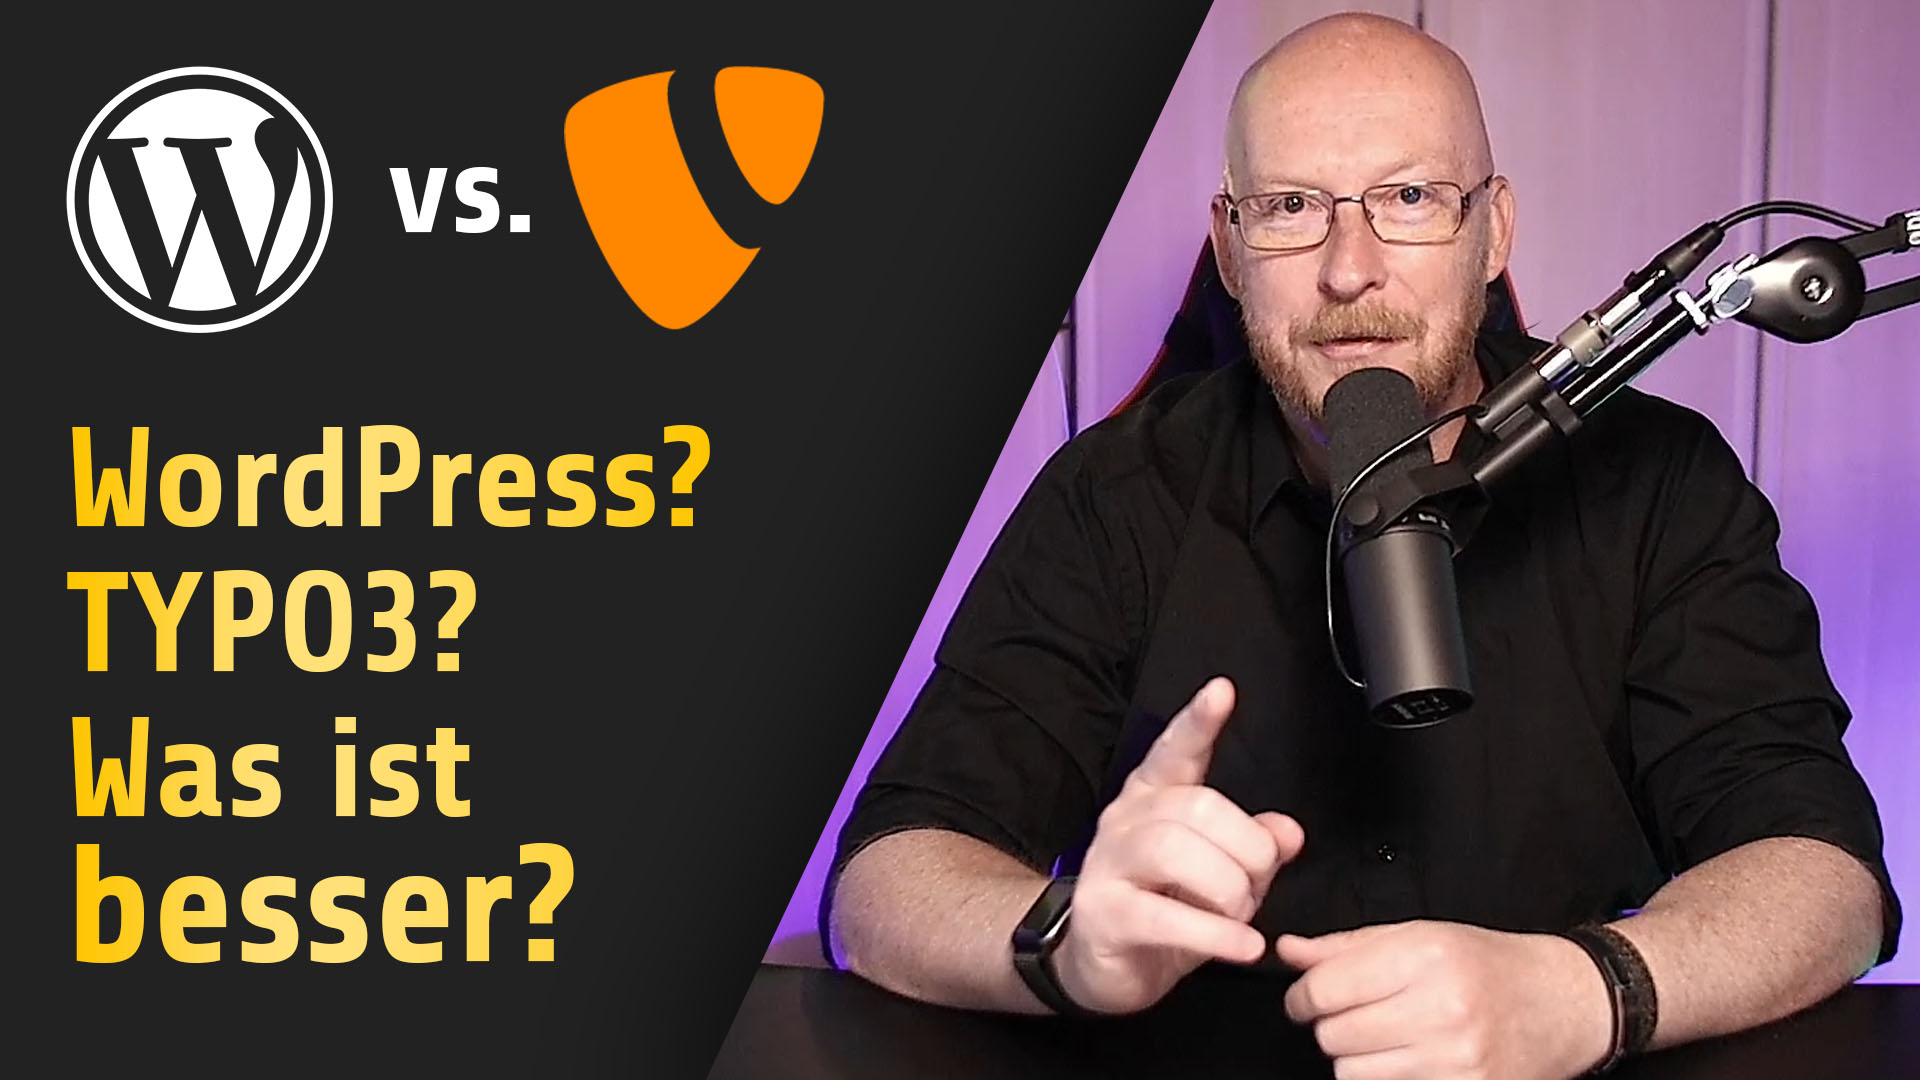 You are currently viewing WordPress vs TYPO3? Was ist besser? Endgültige Klärung!